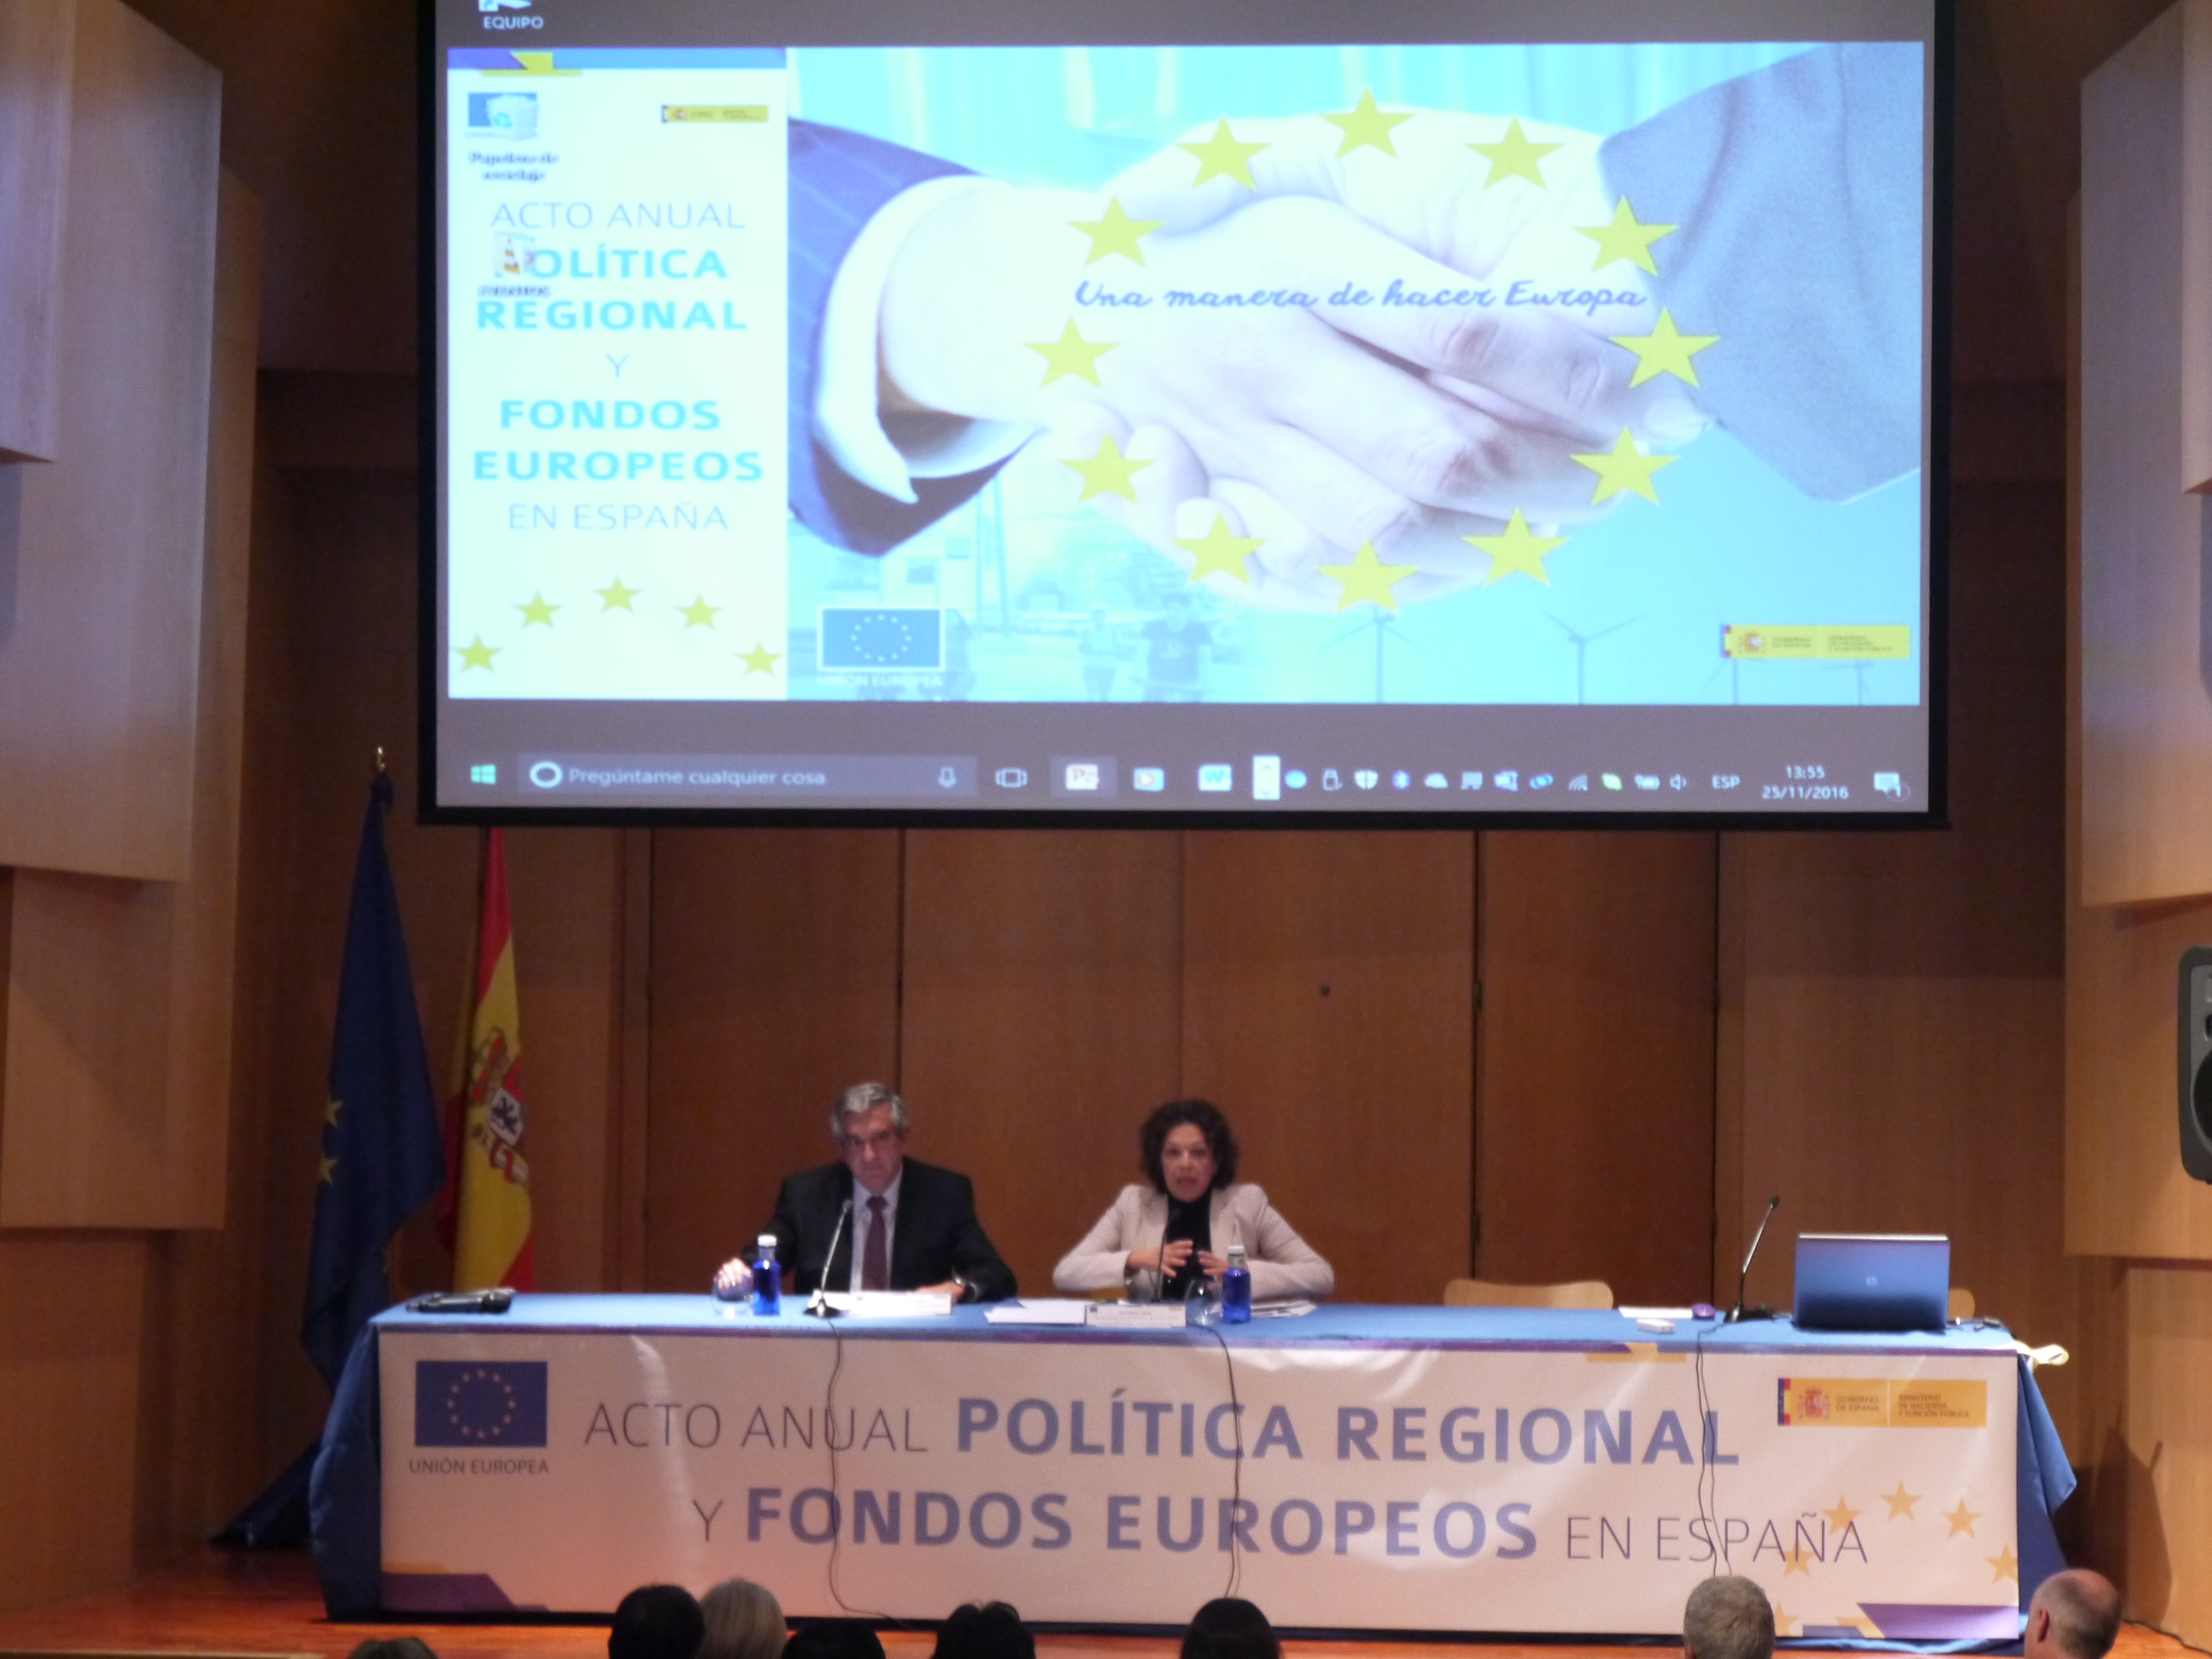 Acto anual sobre Política Regional y Fondos Europeos en España 2016